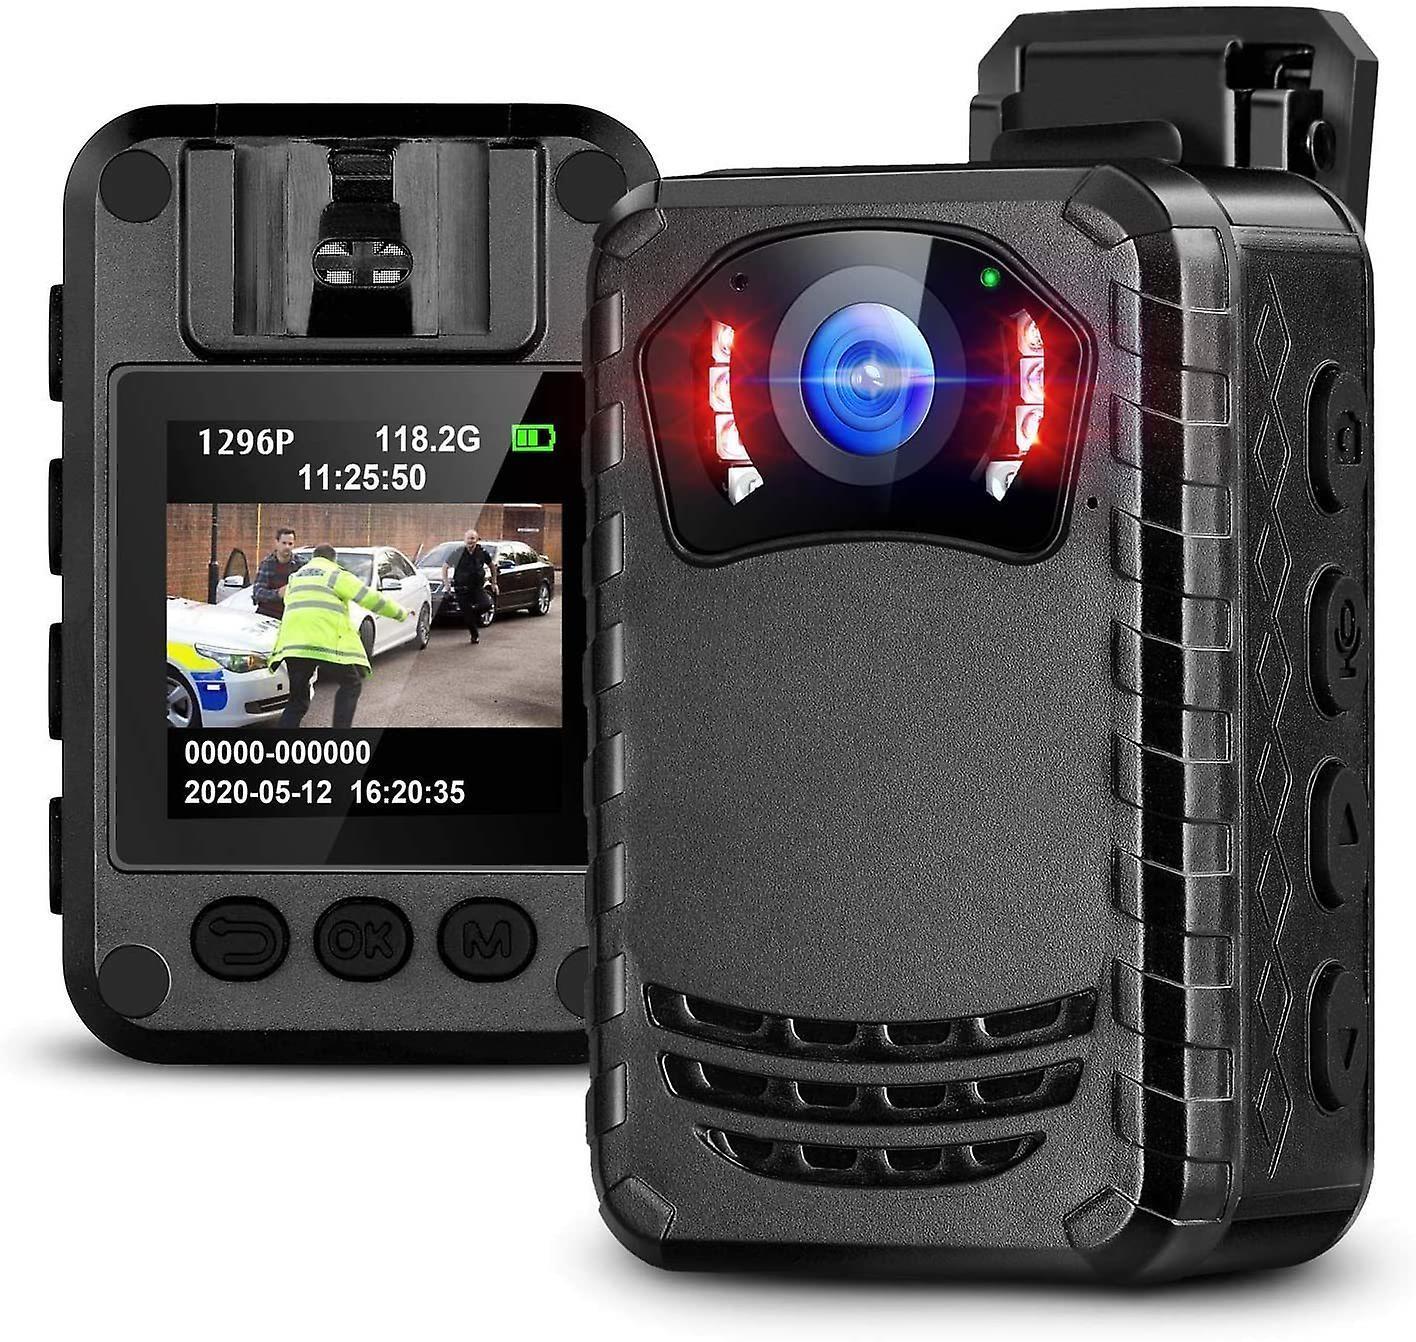 Mini Full HD Camera 1296P Portable Night Vision Police Body Camera-128GB(Black)